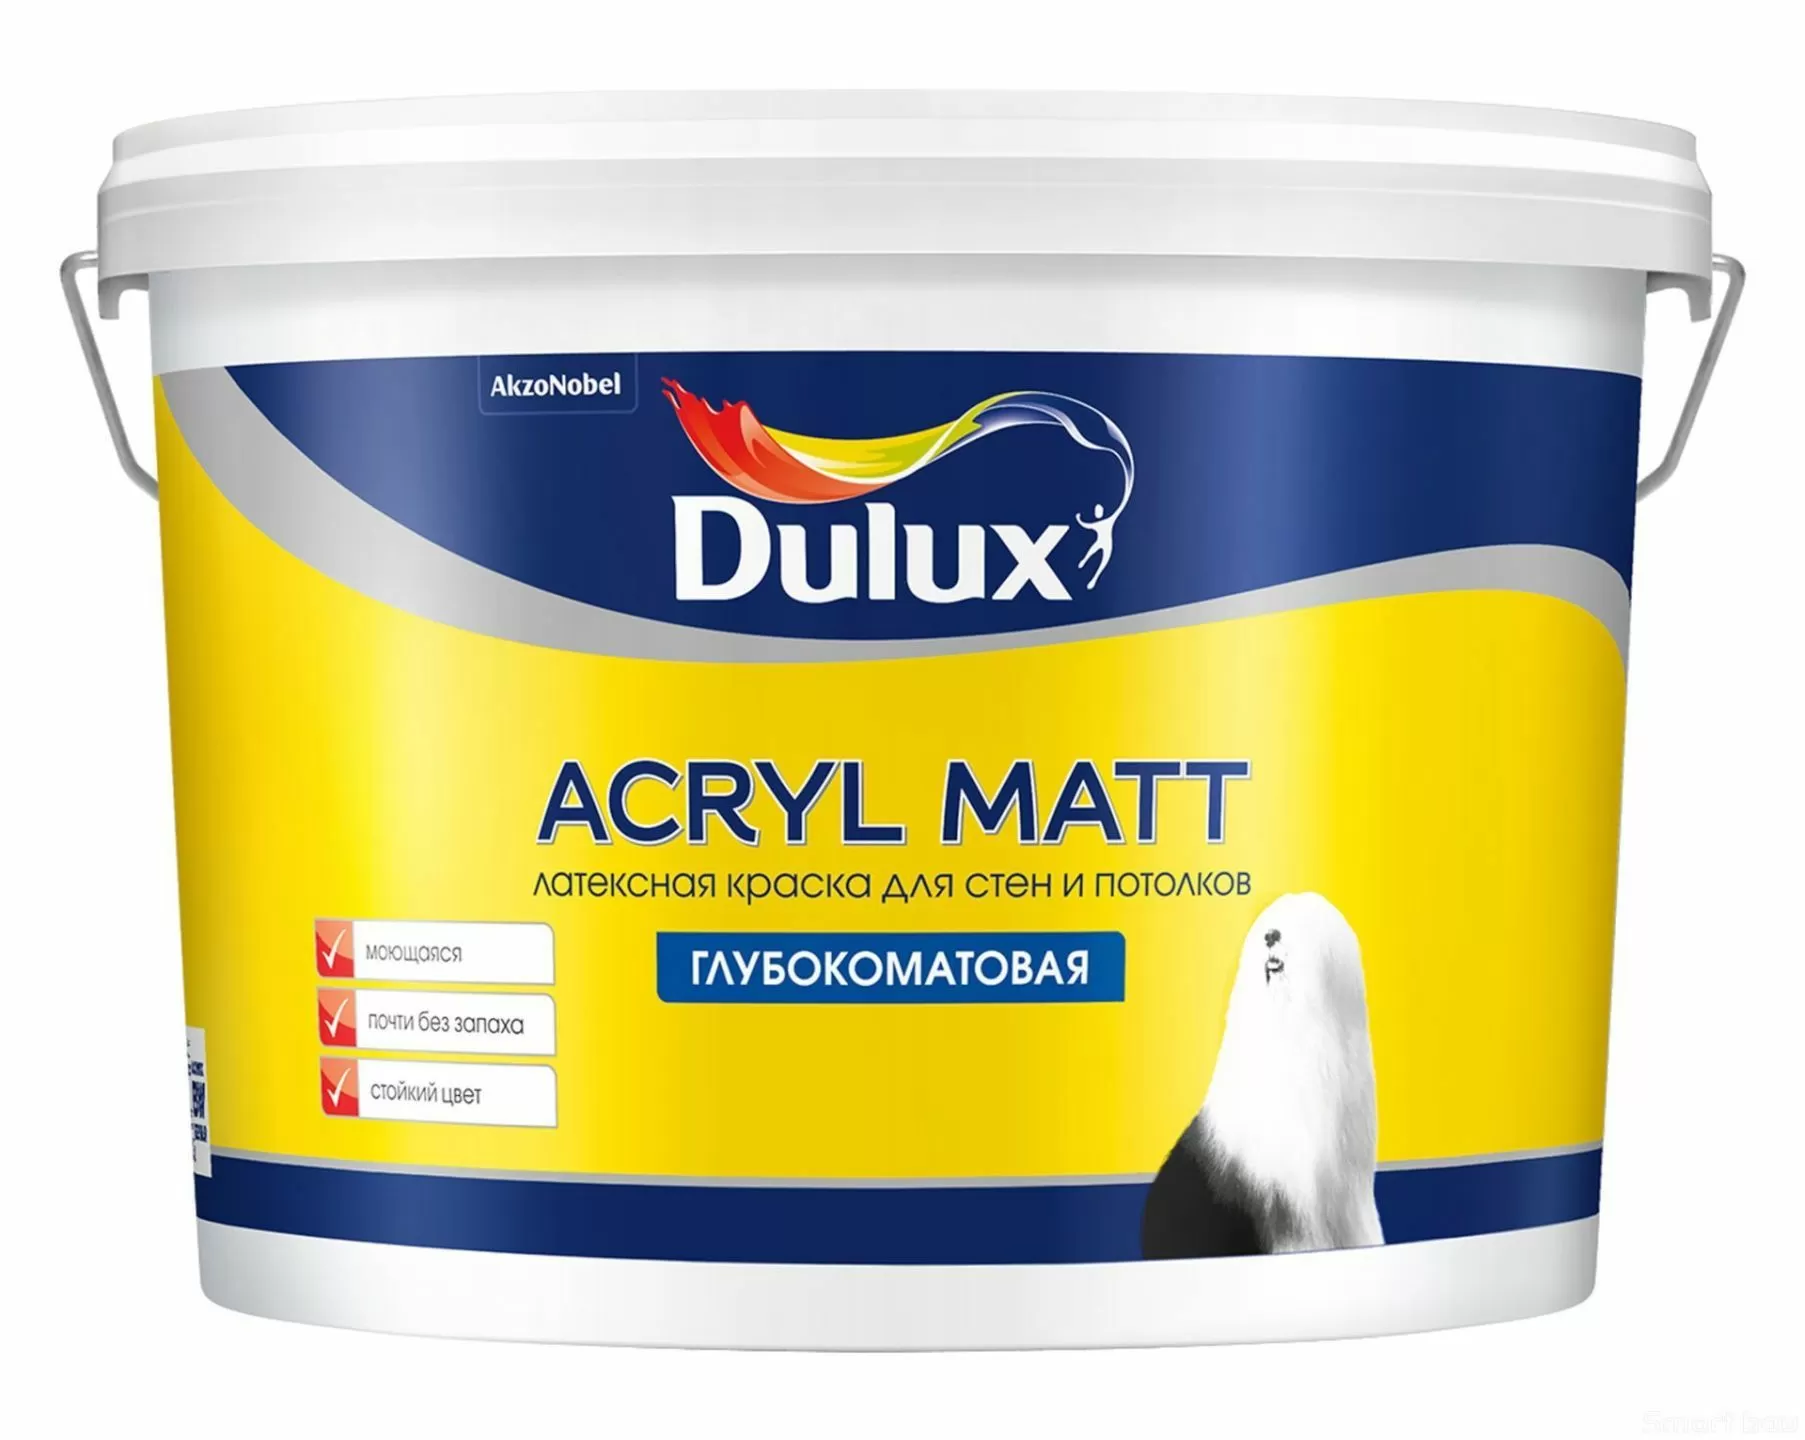 Латексная краска для стен и потолка Dulux Acryl Matt фото